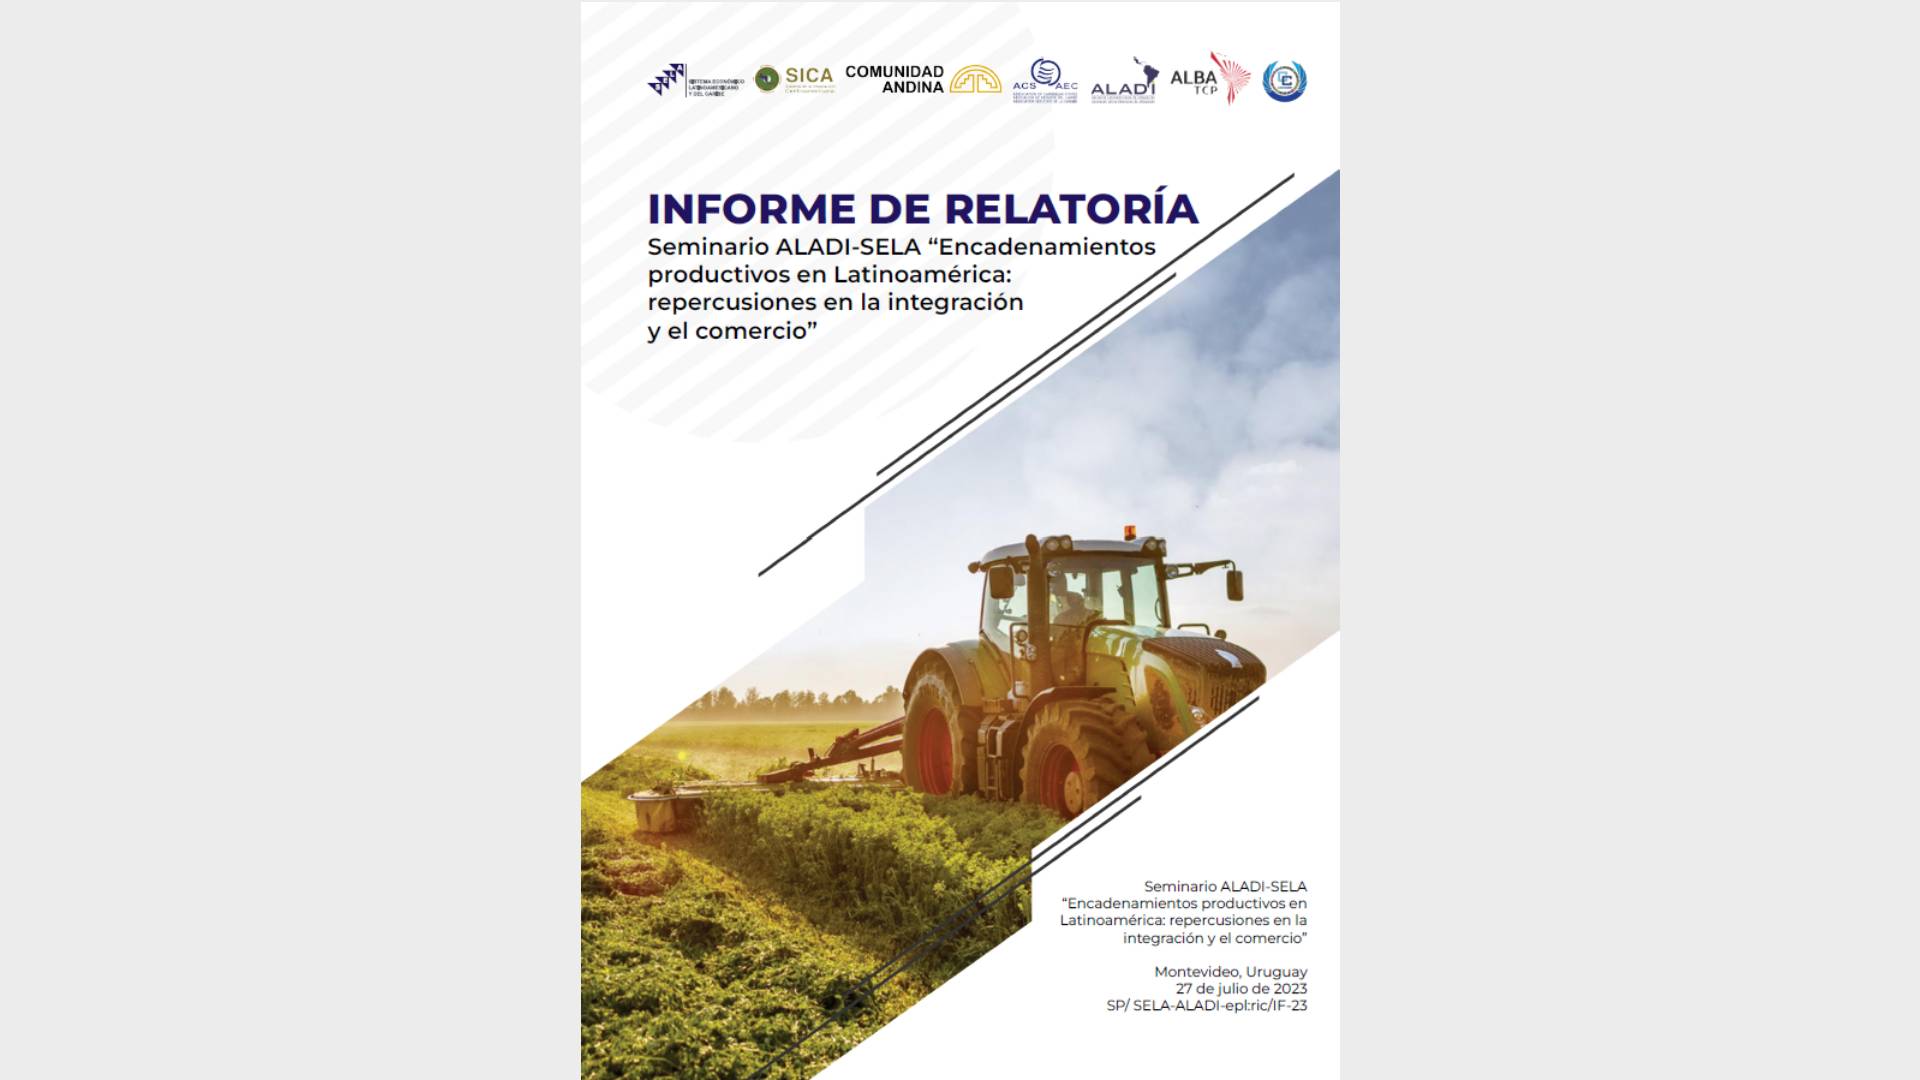 Seminario ALADI-SELA “Encadenamientos productivos en Latinoamérica: repercusiones en la integración y el comercio”